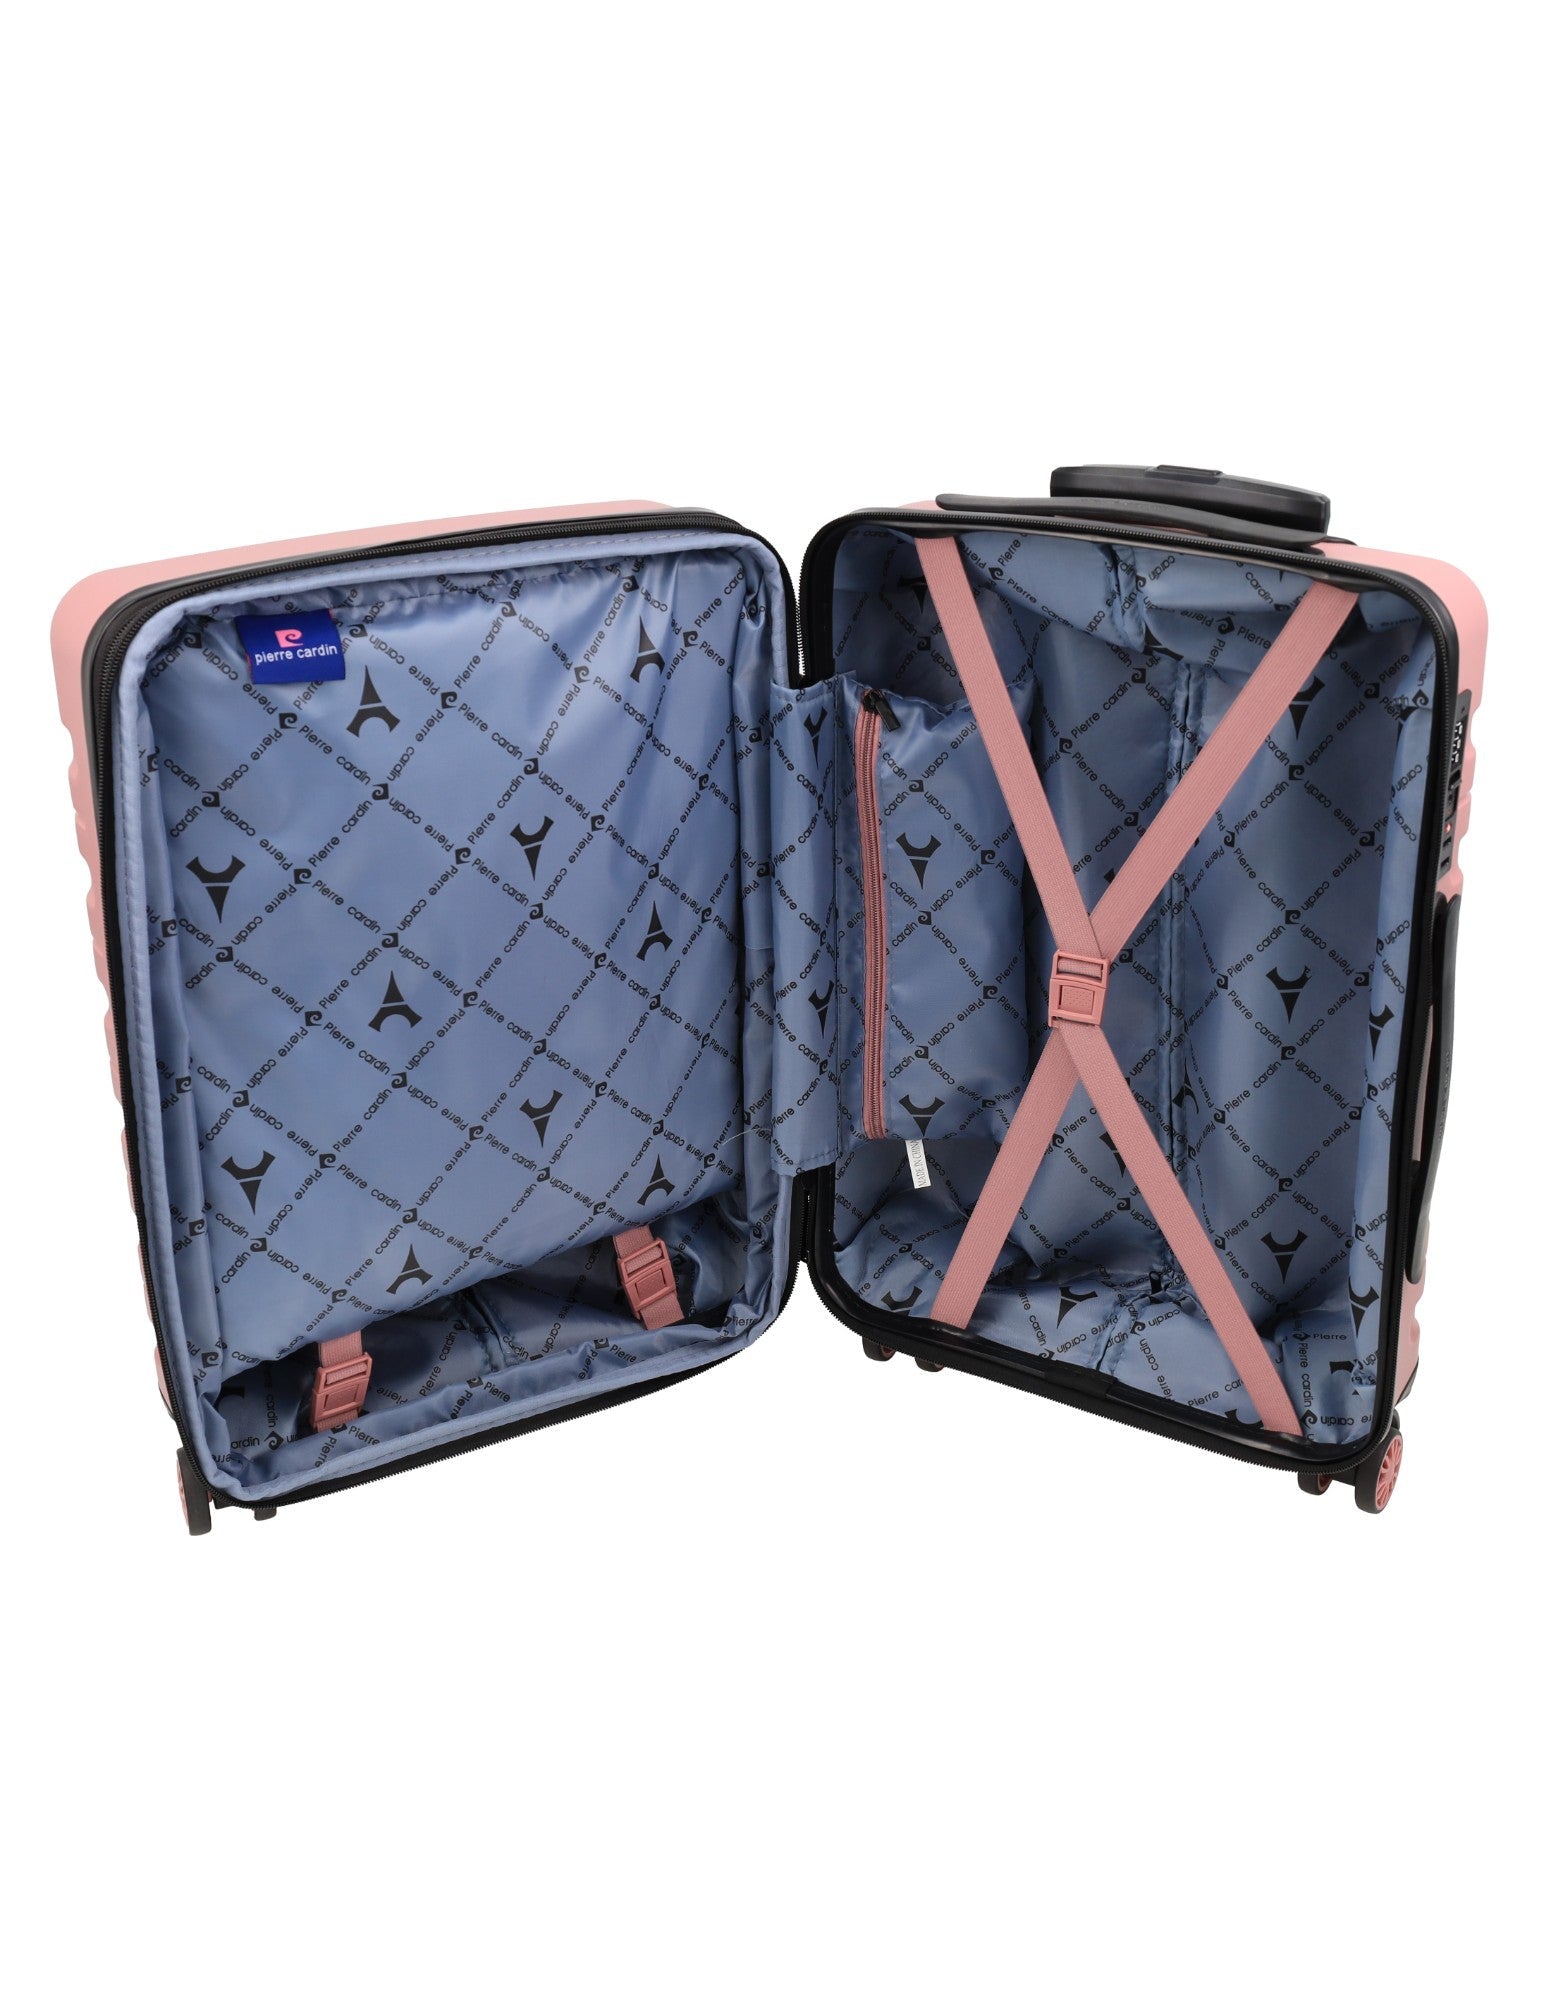 Pierre Cardin 54cm CABIN Hard Shell Suitcase in Rose